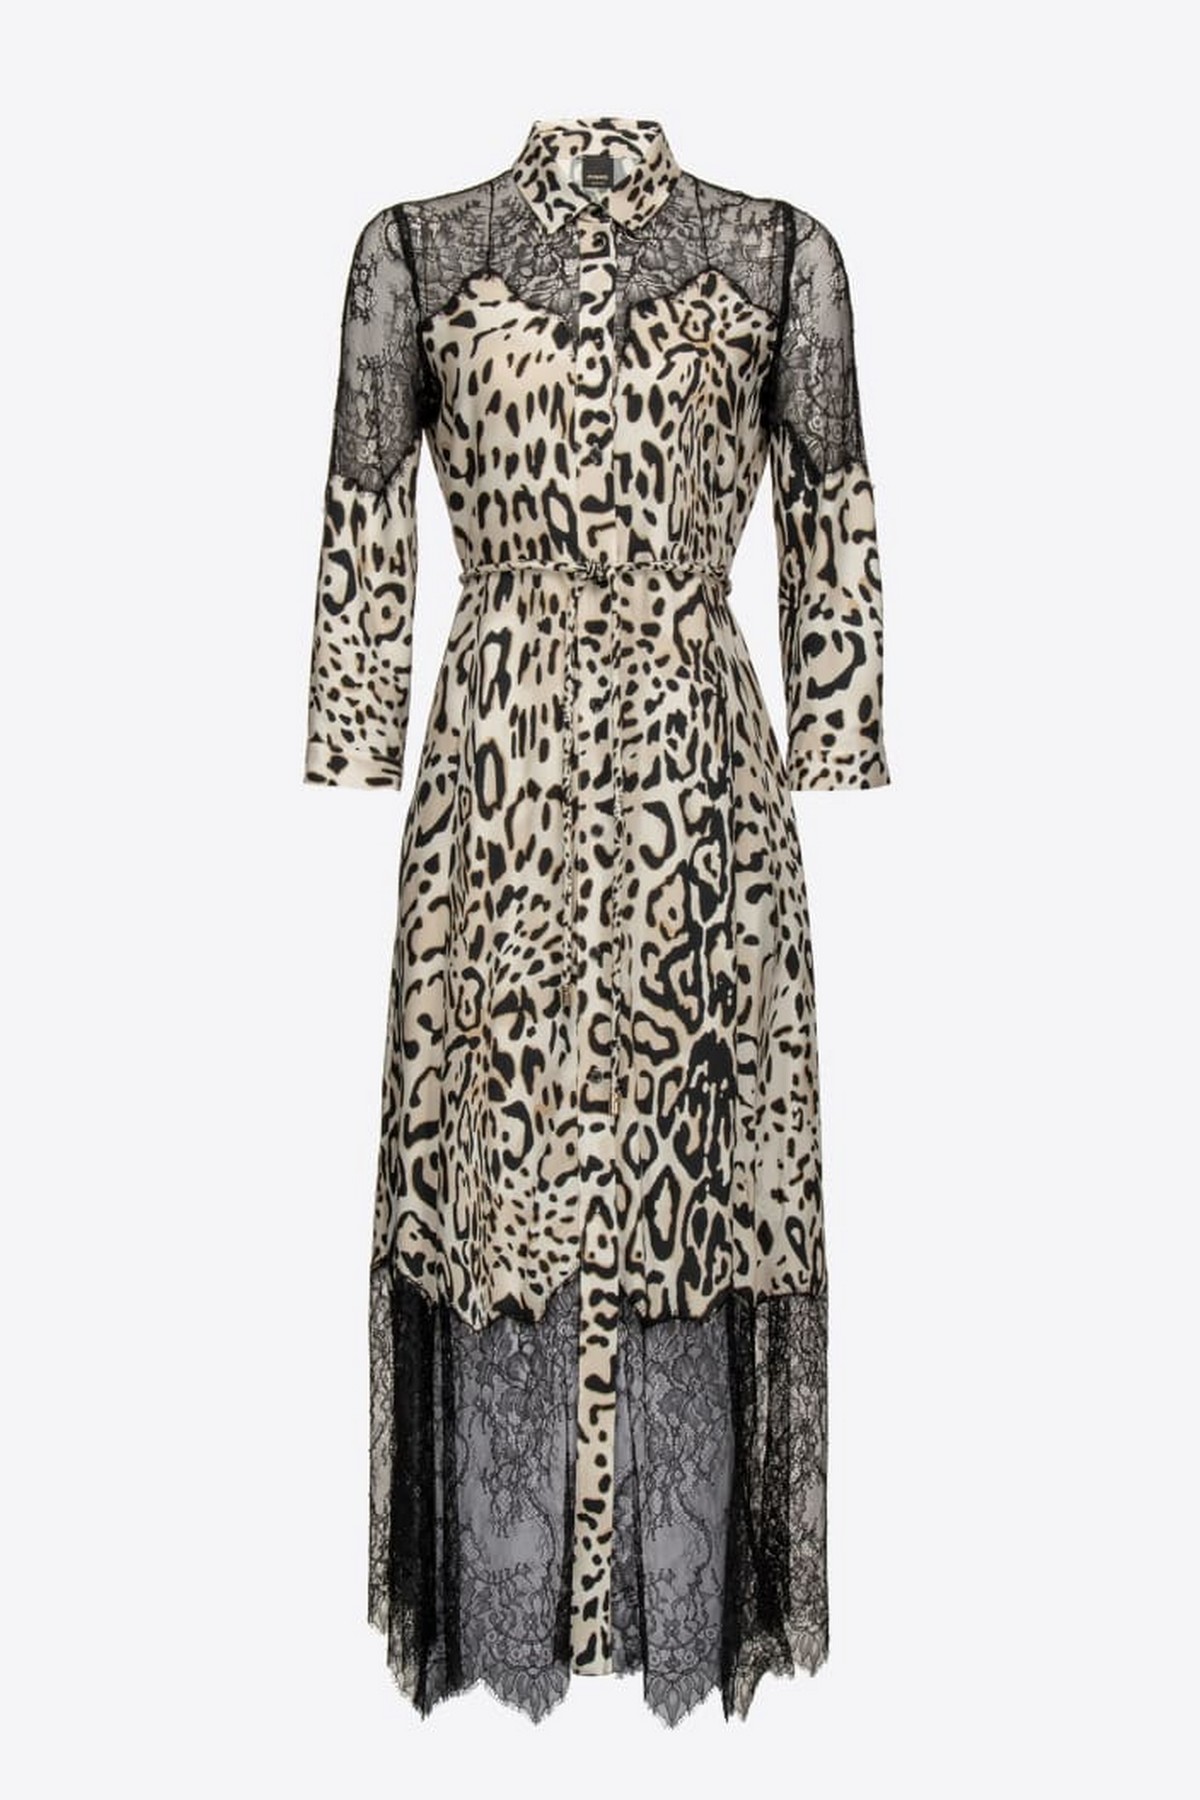 Kleed lang leopard kant in de kleur ecru zwart van het merk Pinko